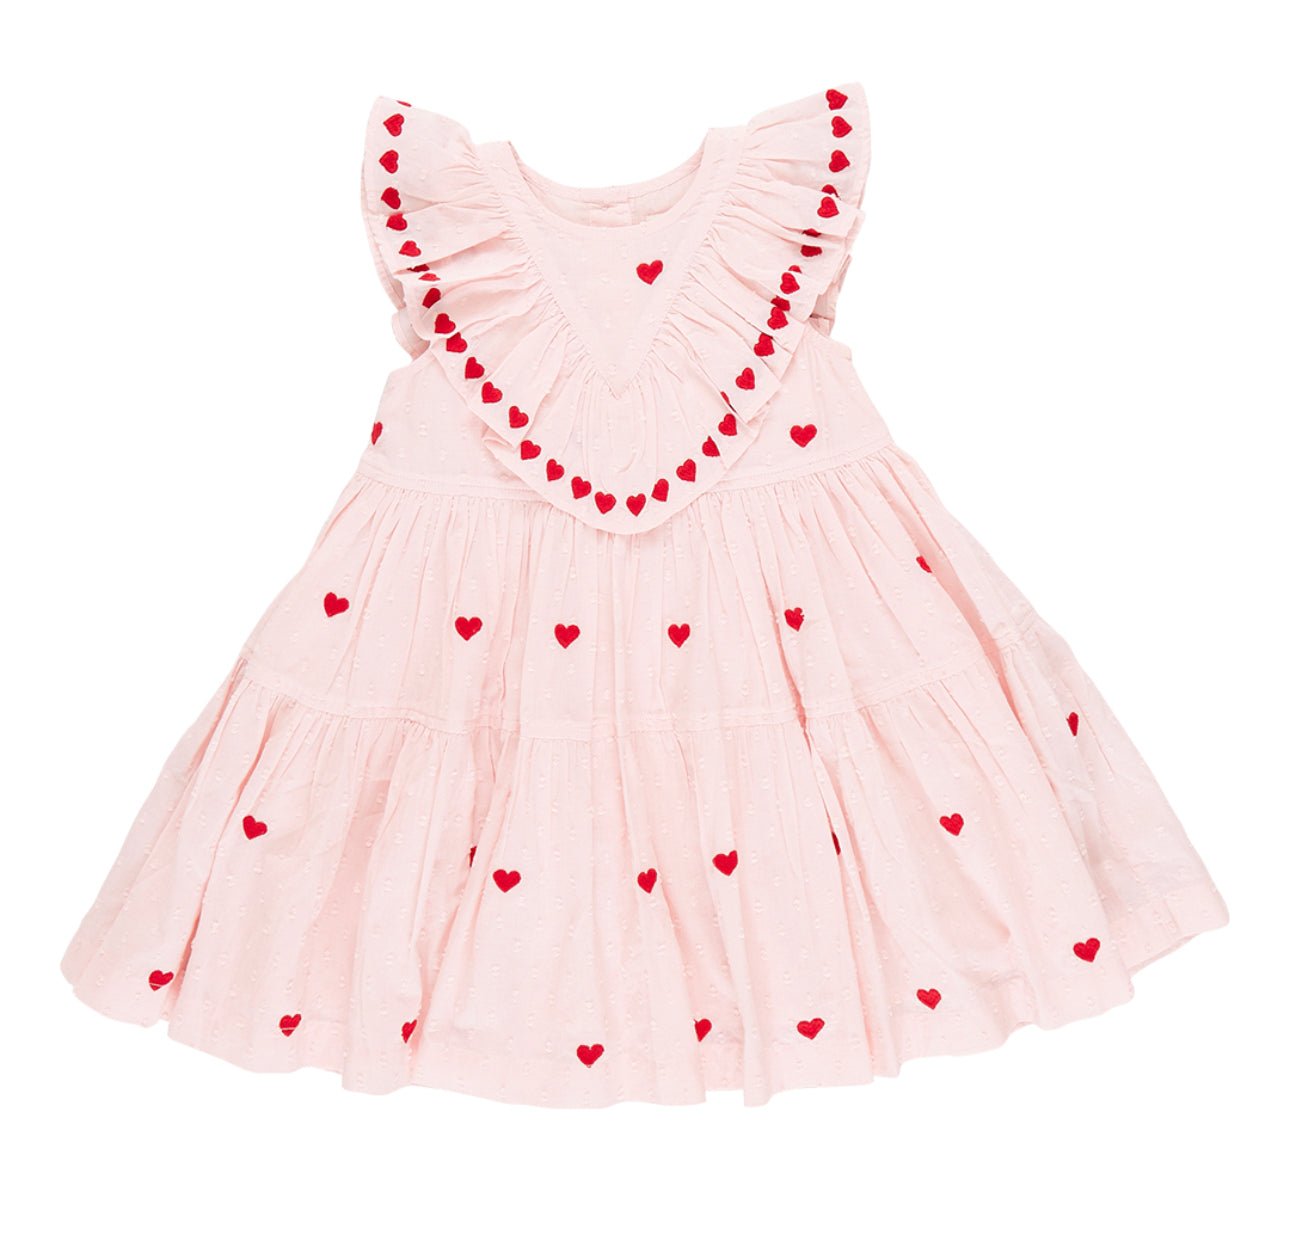 Confetti heart embroidery dress